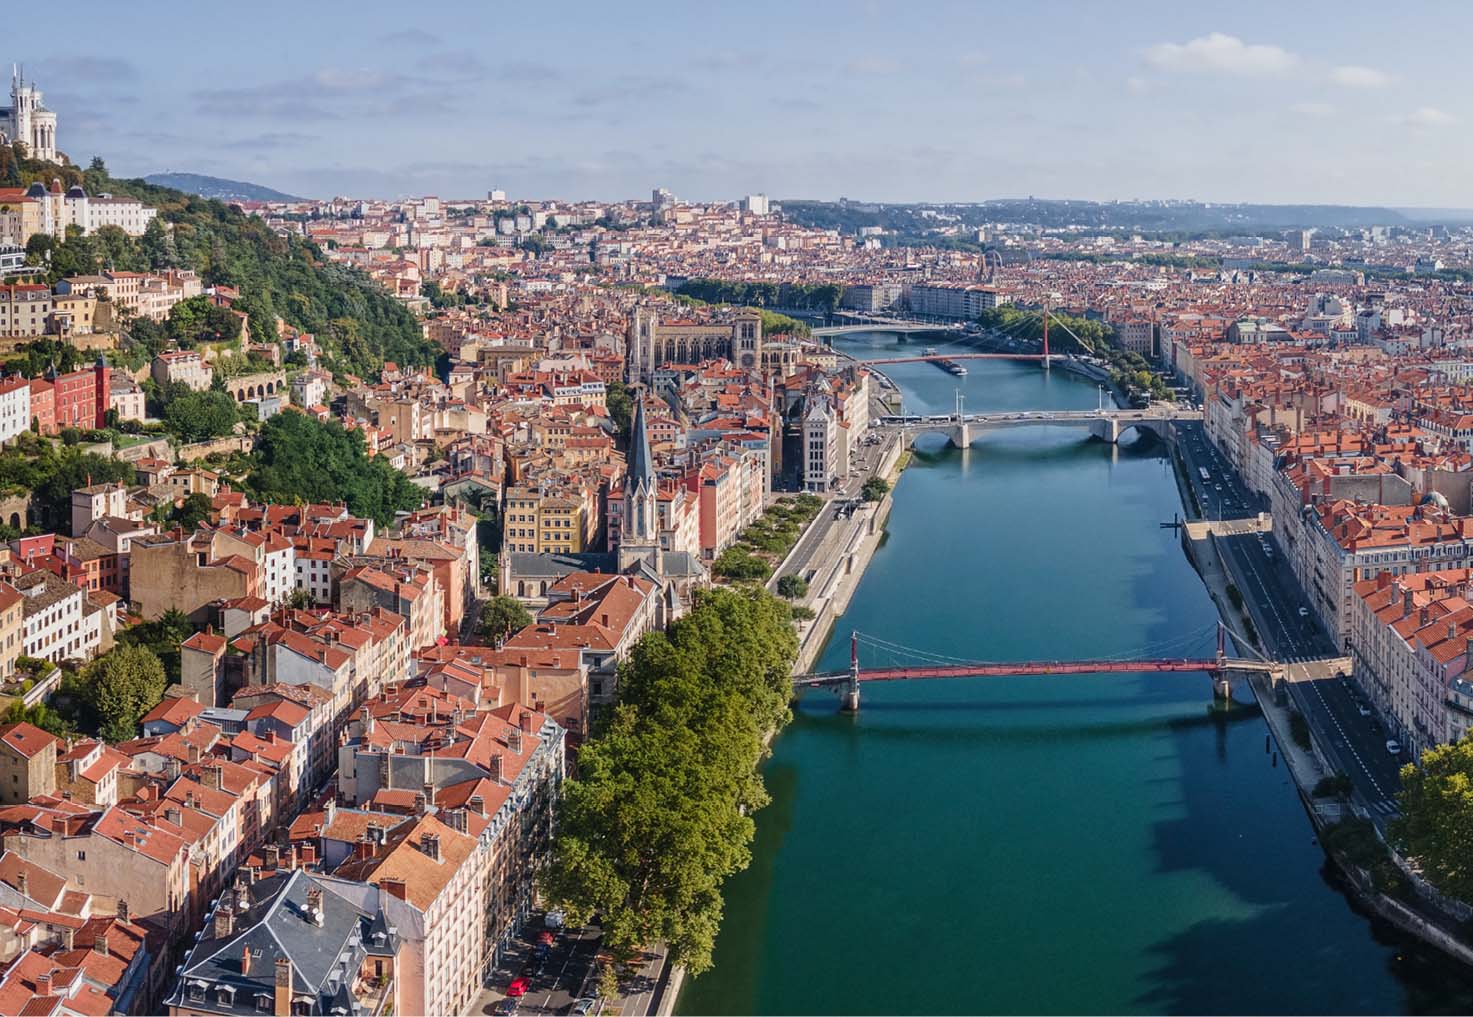 A cityscape view of Lyon